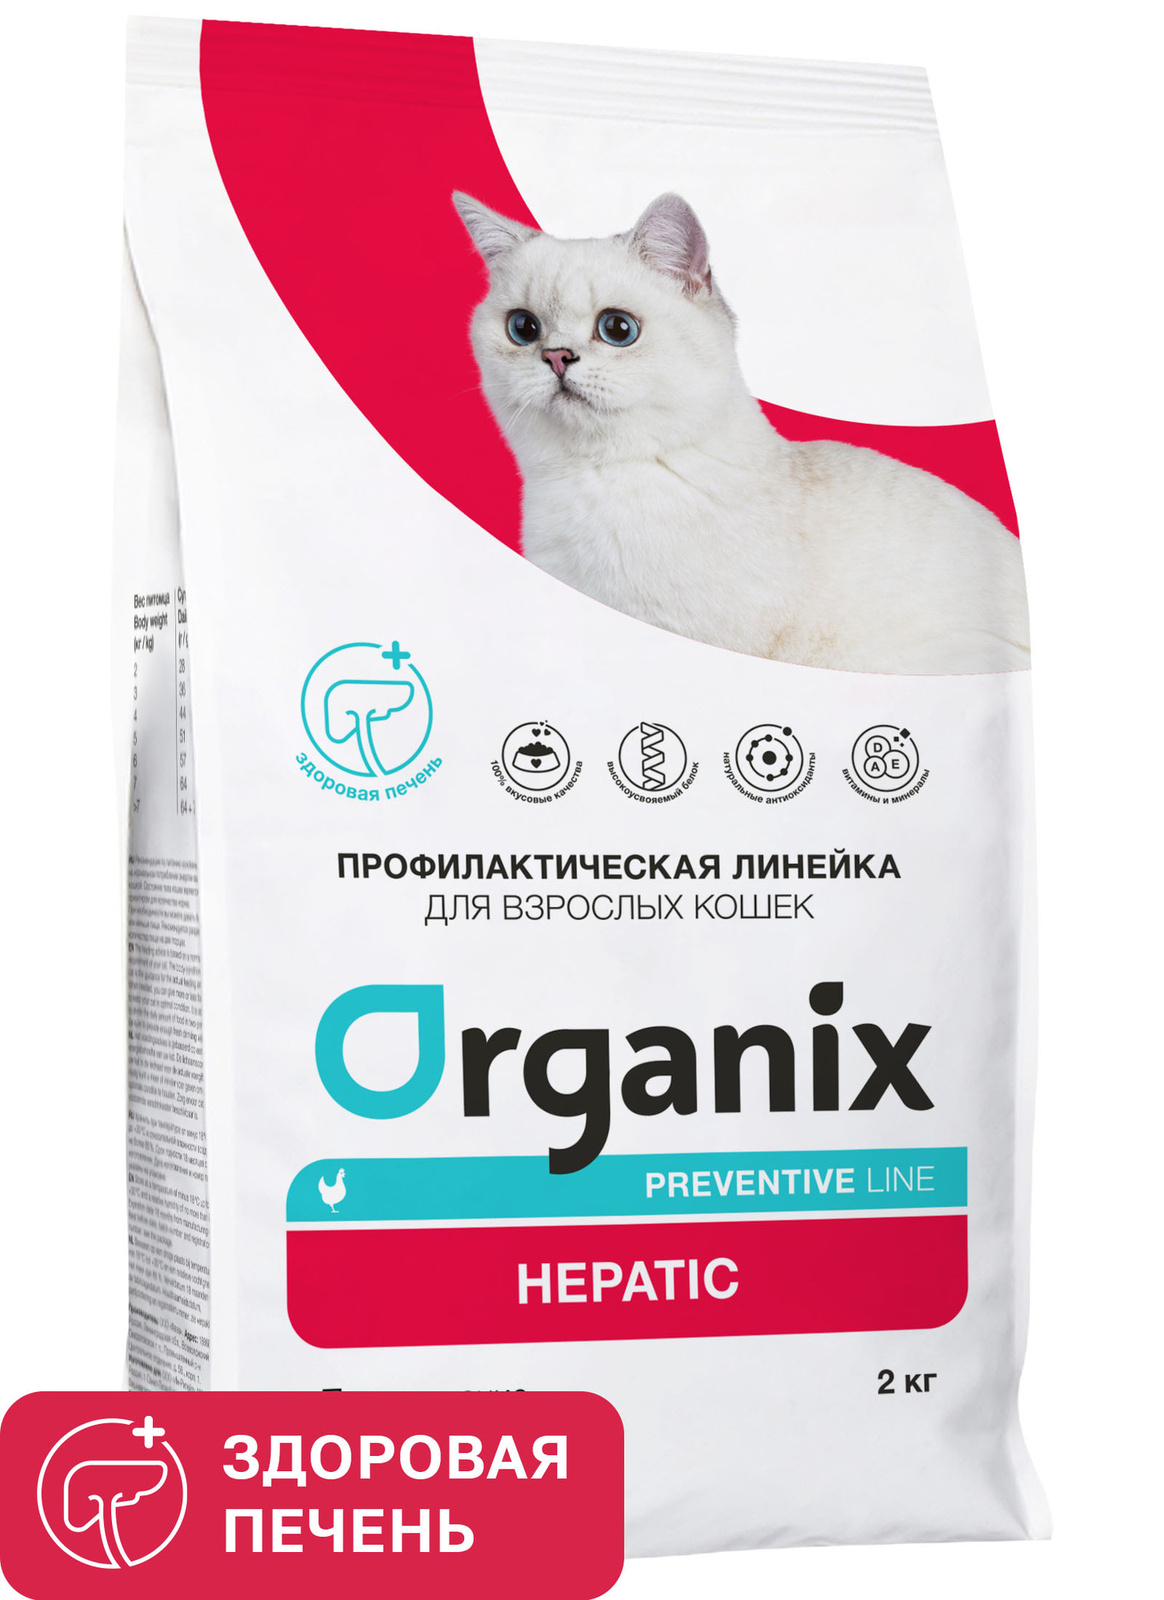 Organix Preventive Line Organix Preventive Line hepatic сухой корм для кошек Поддержание здоровья печени (600 г) фото